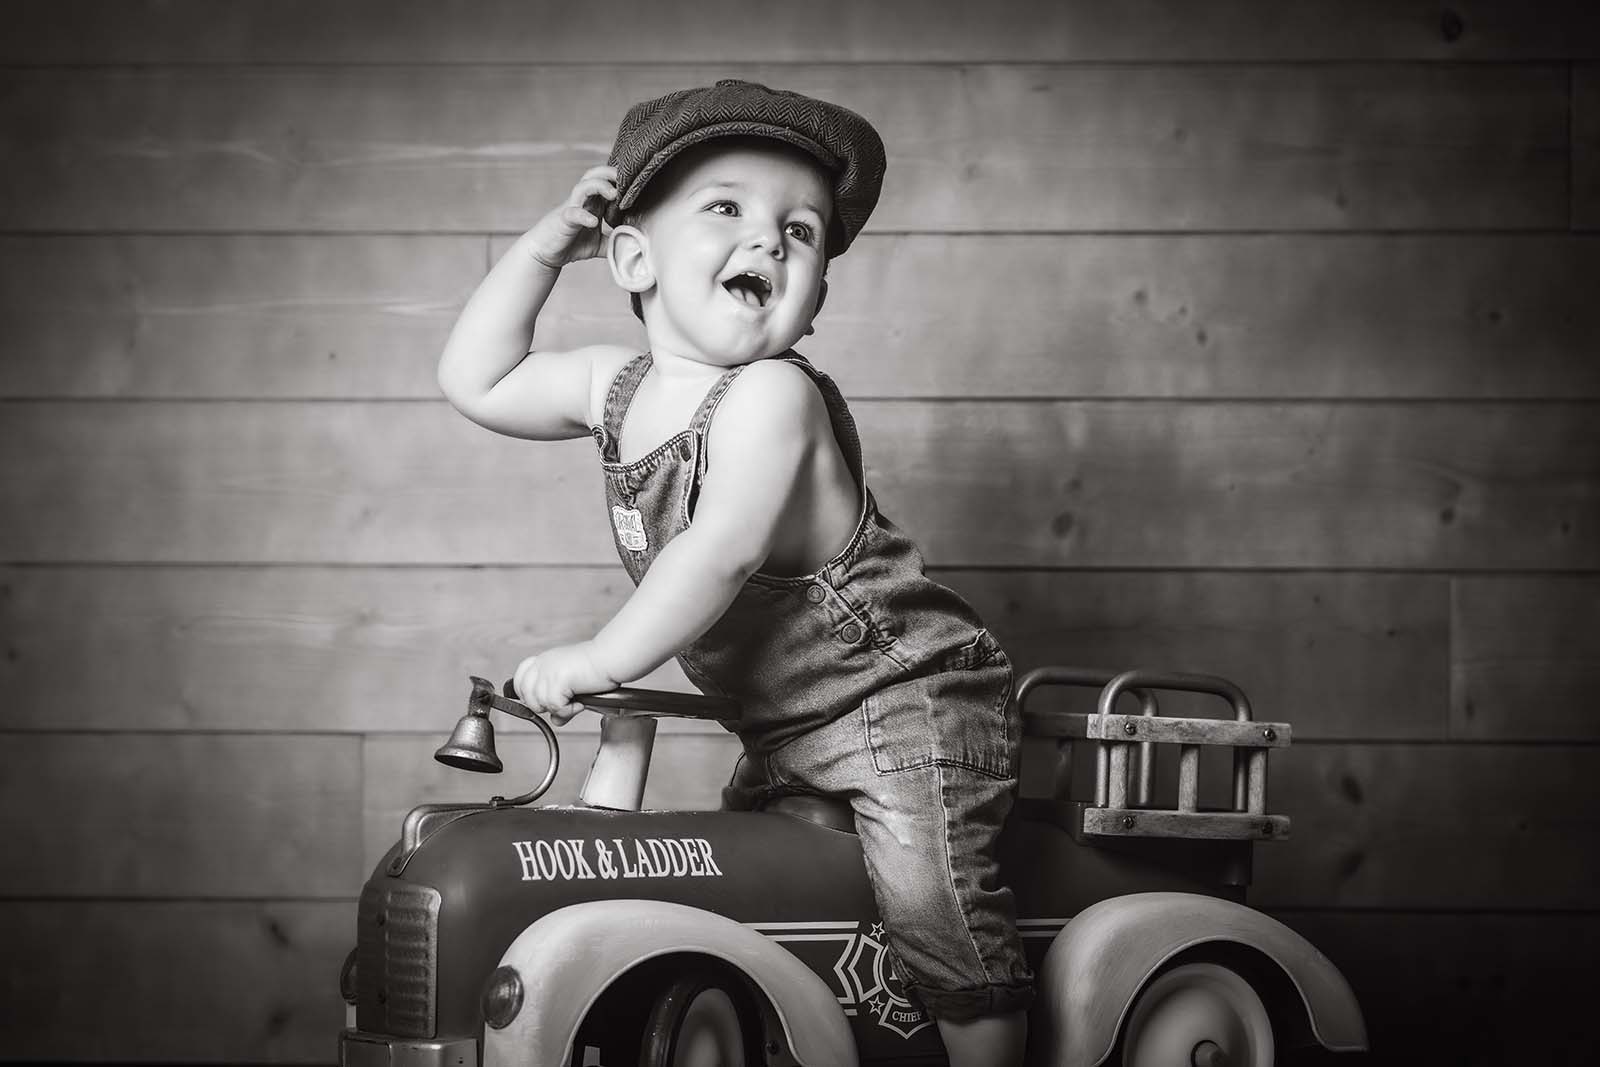 portrait noir et blanc d'un petit garçon sur un petit camion de pompier. Il est habillé en salopette bleue et porte un béret